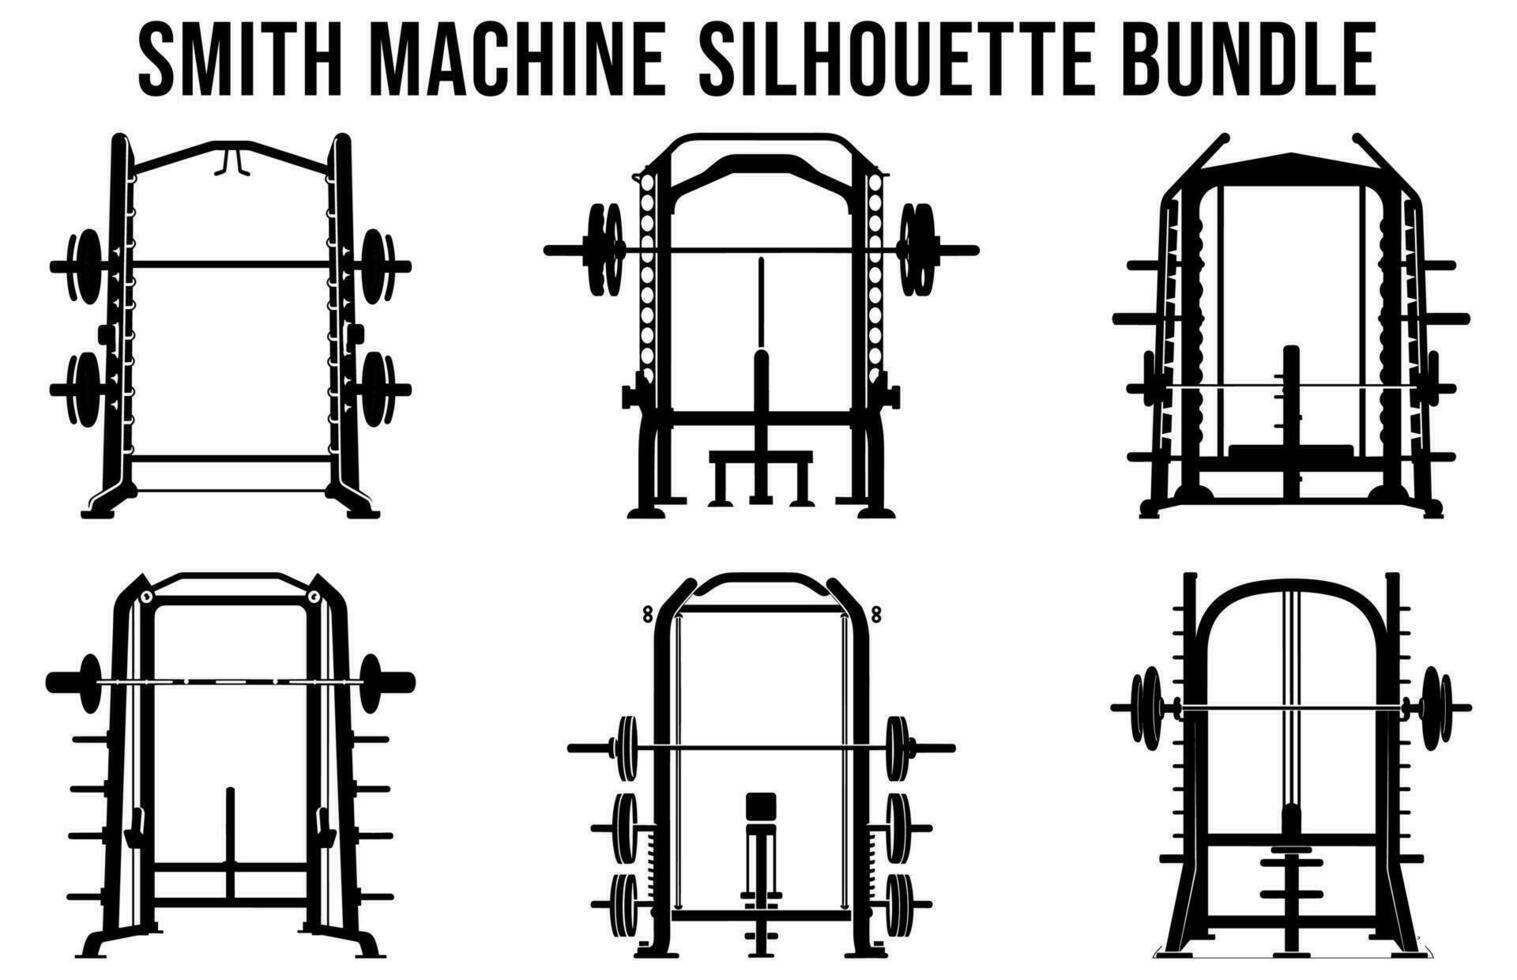 vrij Sportschool machine silhouetten vector bundel, geschiktheid element machine illustratie bundel